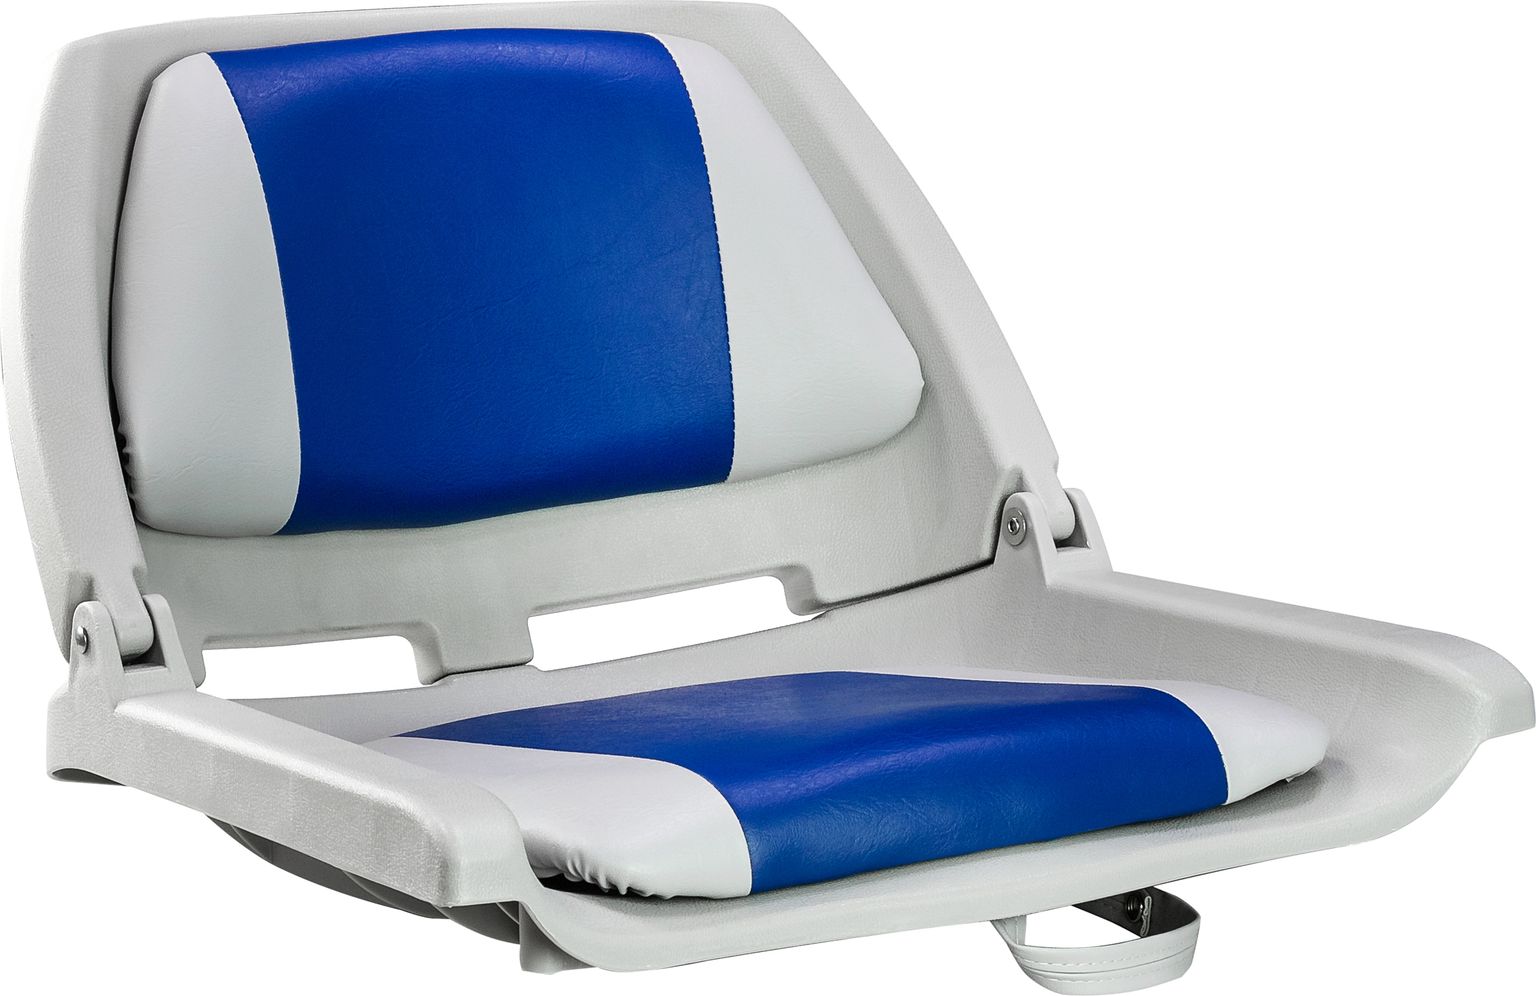 Кресло мягкое складное, обивка винил, цвет серый/синий, Marine Rocket 75109GB-MR кресло мягкое складное камуфляж осень marine rocket 75109max5 mr